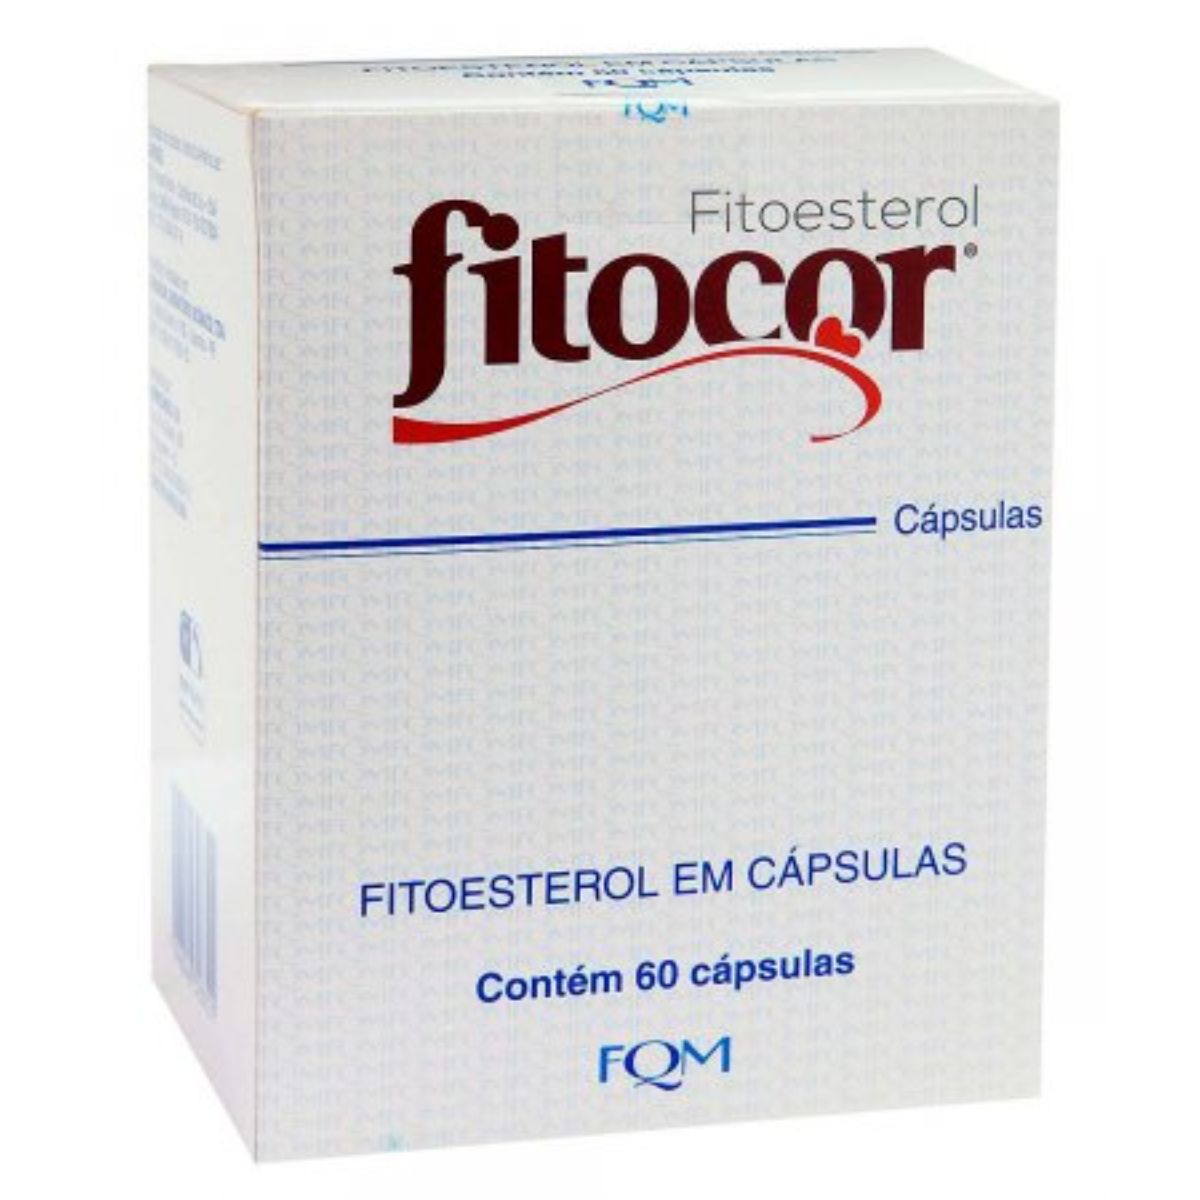 fitoesterol-fitocor-com-60-capsulas-1.jpg